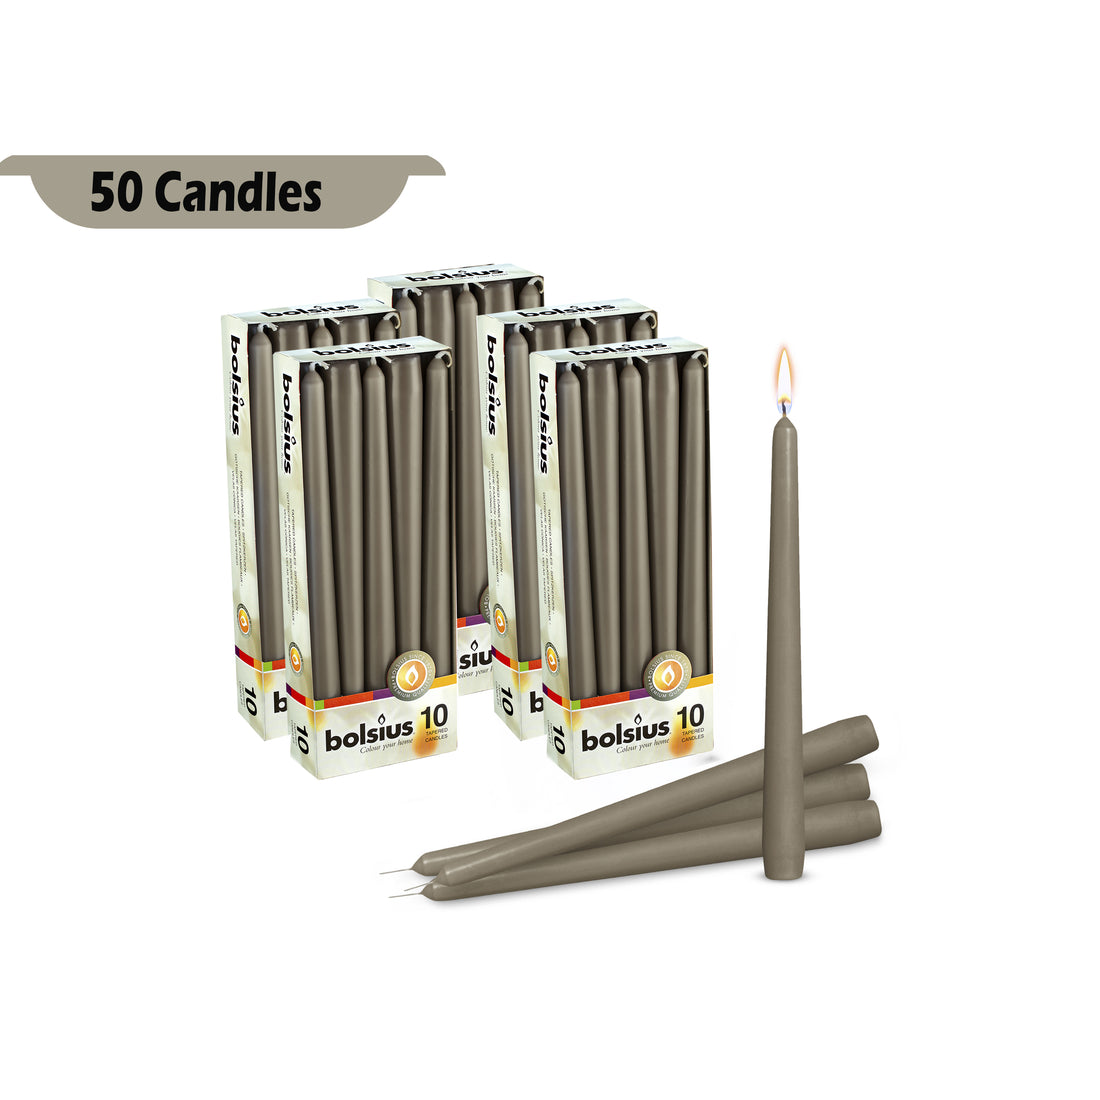 10" X 0.9" Classic Bulk Taper Candles - 40 - 50 & 60 Pack